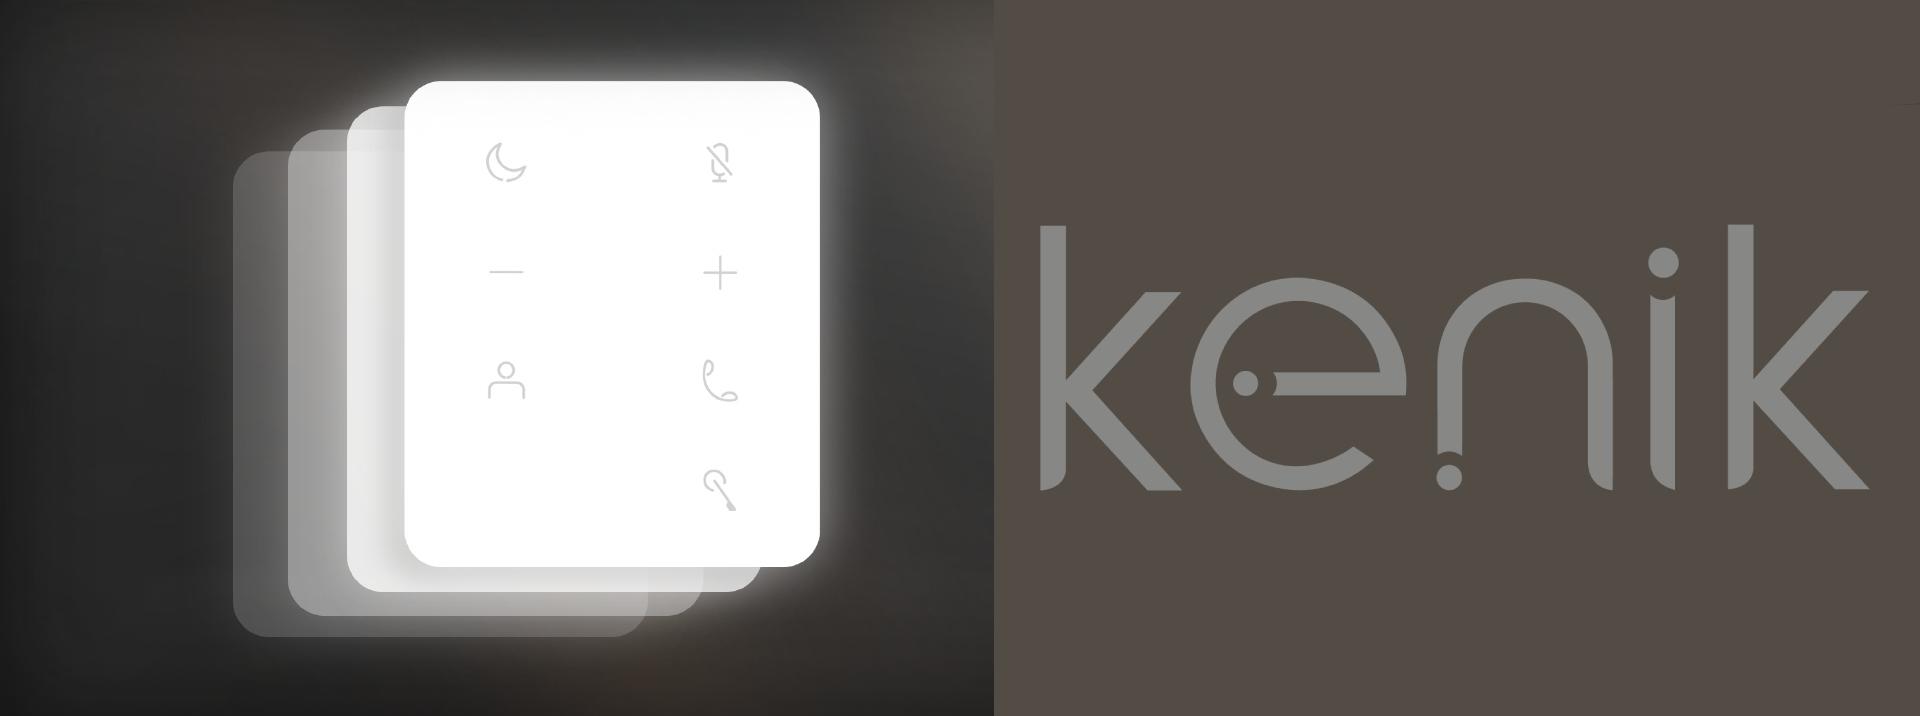 Unifon słuchawkowy IP KENIK KG-U10 - dotykowe klawisze dla szybkiego i łatwego dostępu do wszystkich funkcji kasety